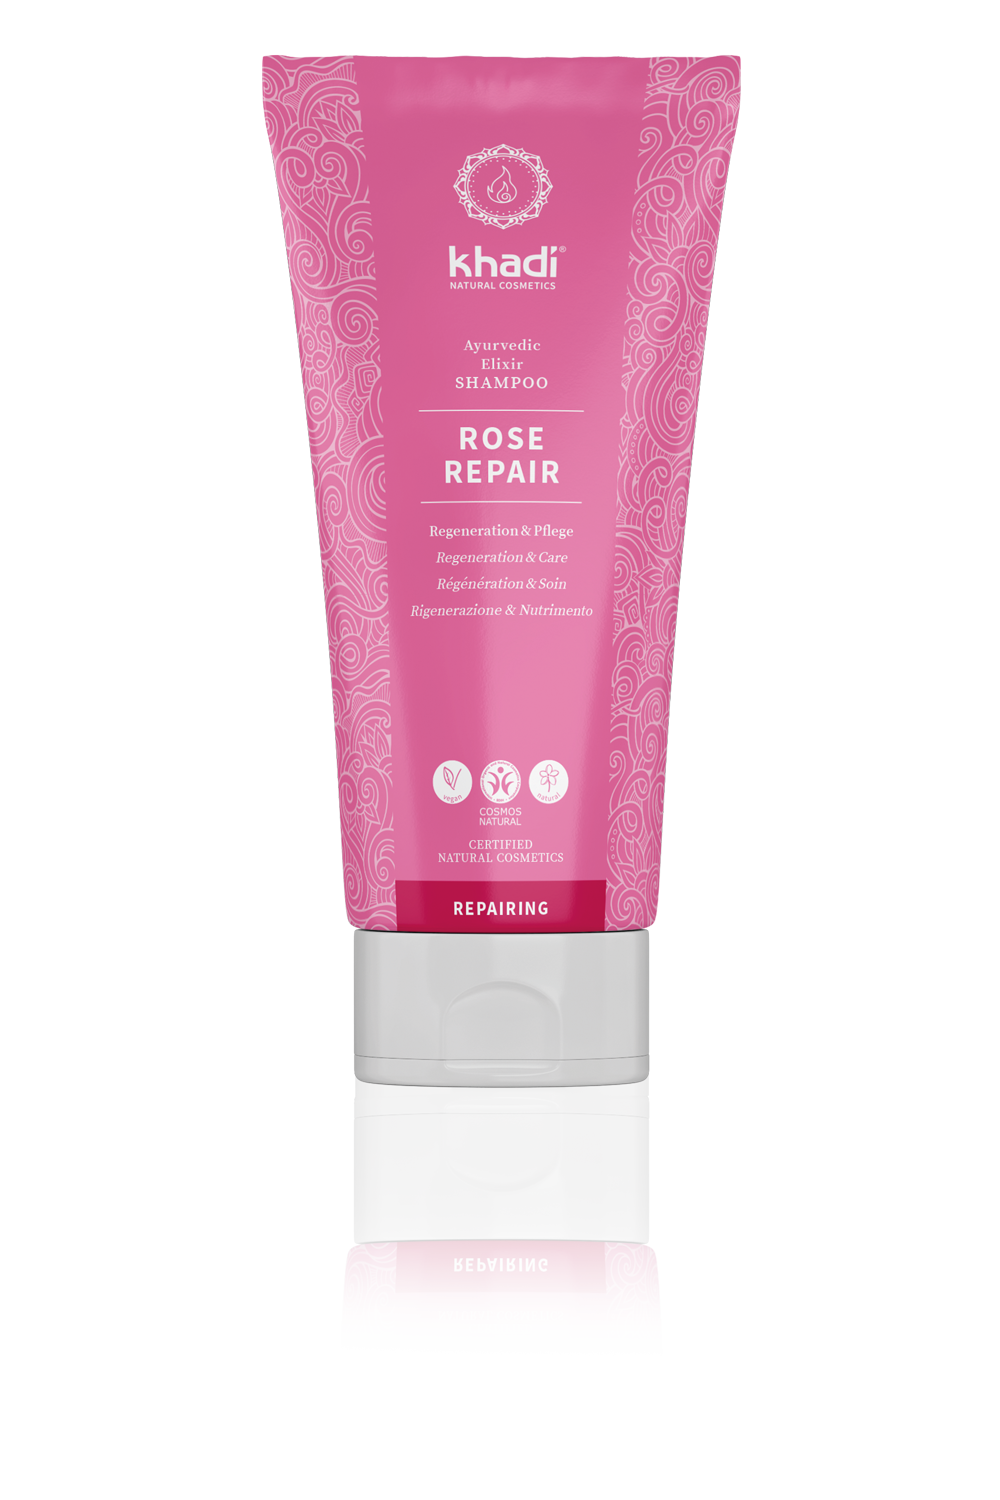 khadi Ayurvedic Elixir Shampoo Rose Repair